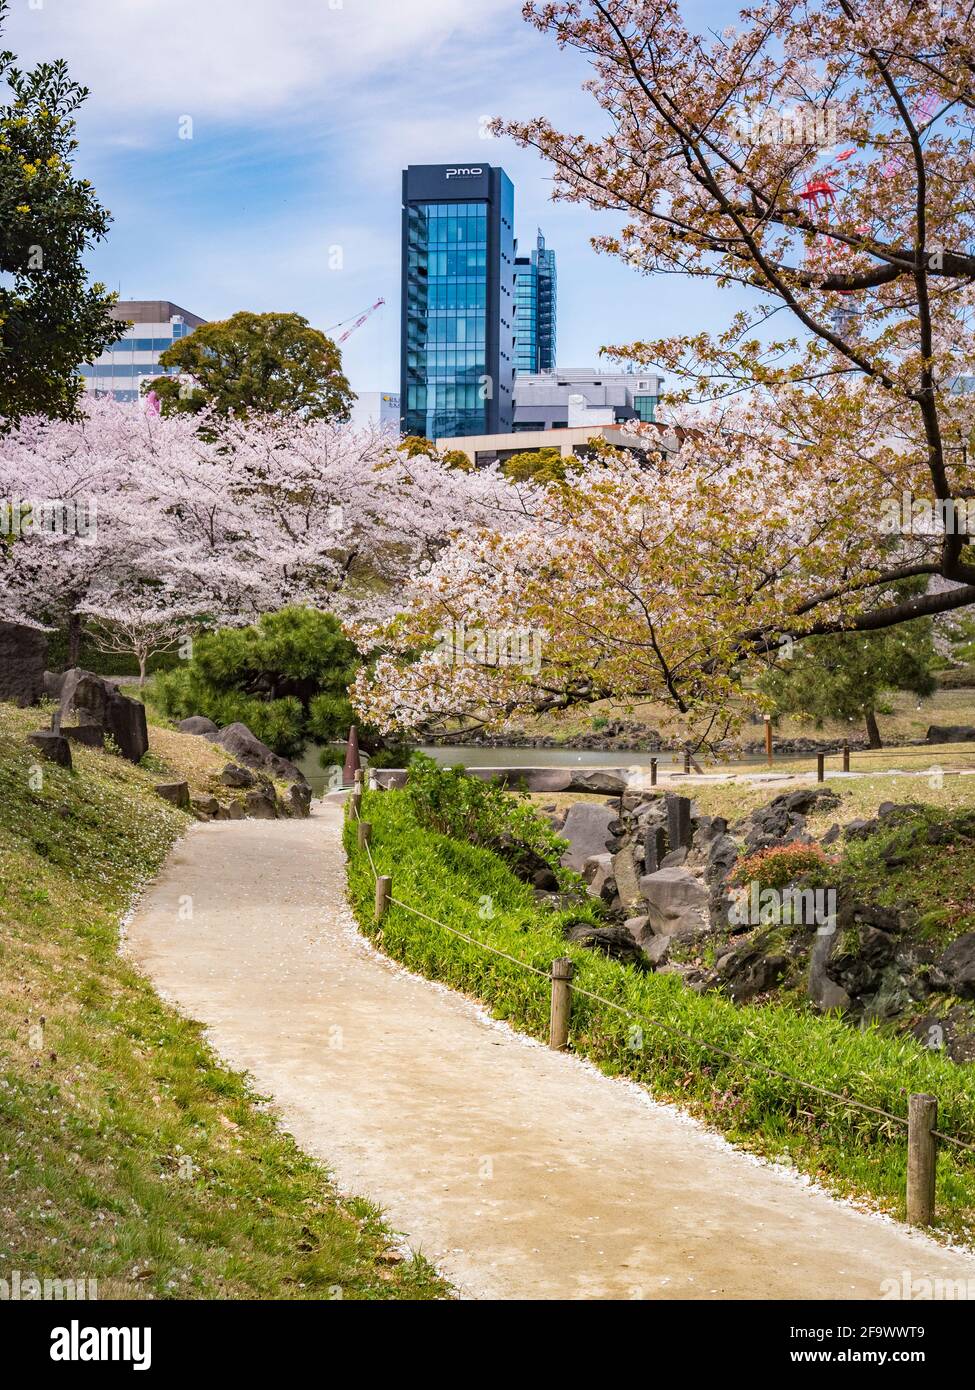 5 aprile 2019: Tokyo, Giappone - Sentiero e fioritura dei ciliegi nei Giardini Kyu-Shiba-rikyu, un giardino paesaggistico in stile tradizionale nel centro di Tokyo. Foto Stock